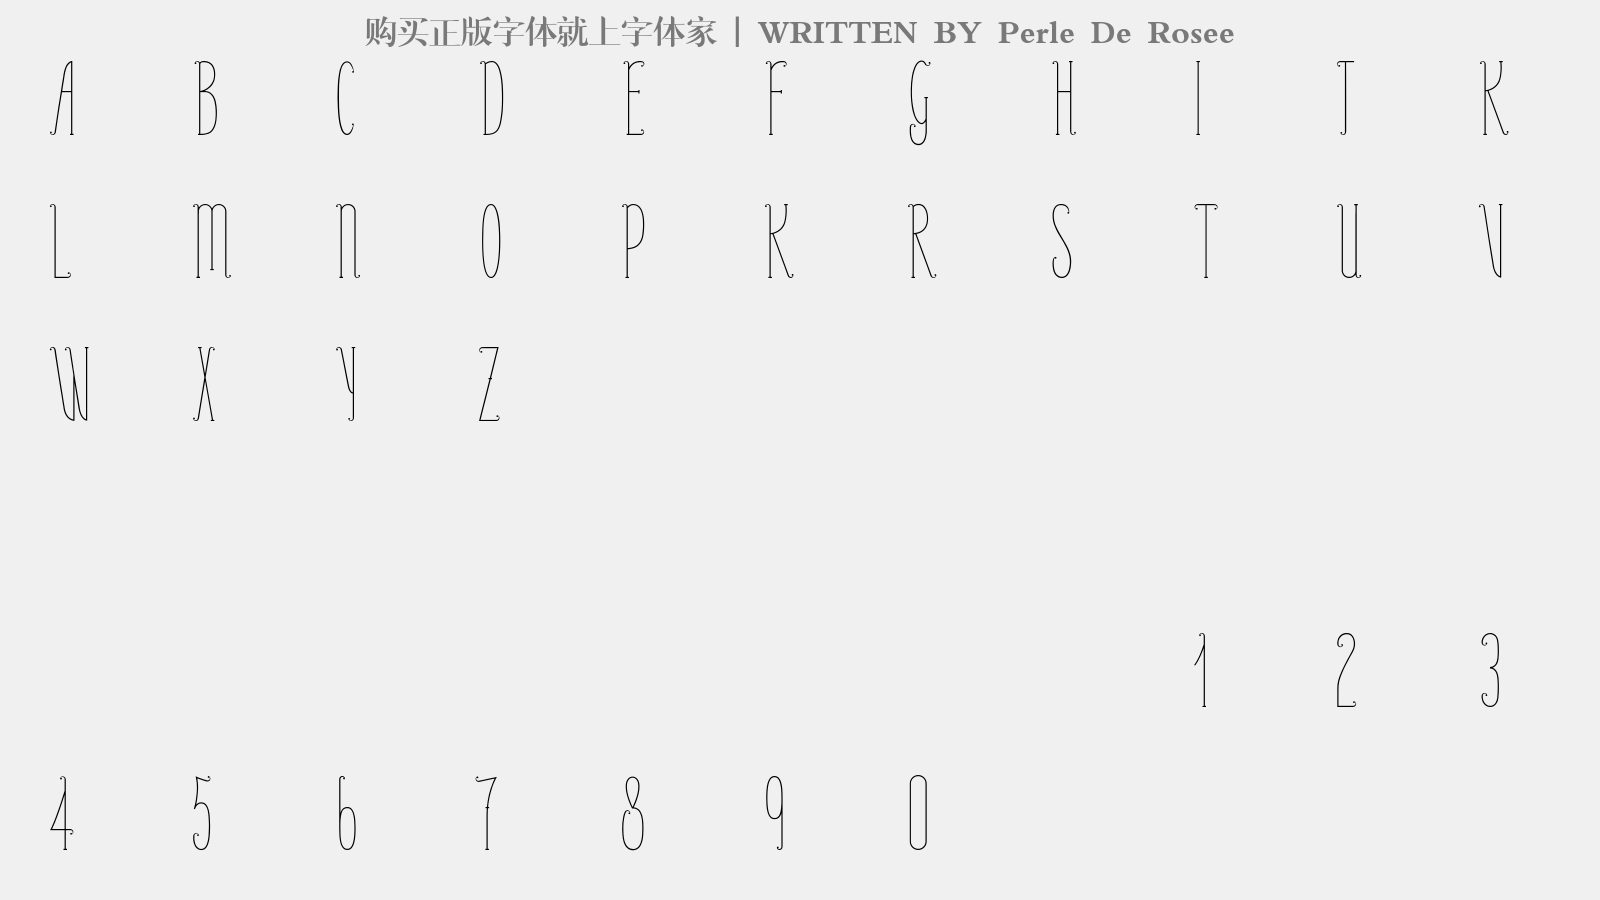 Perle De Rosee - 大写字母/小写字母/数字